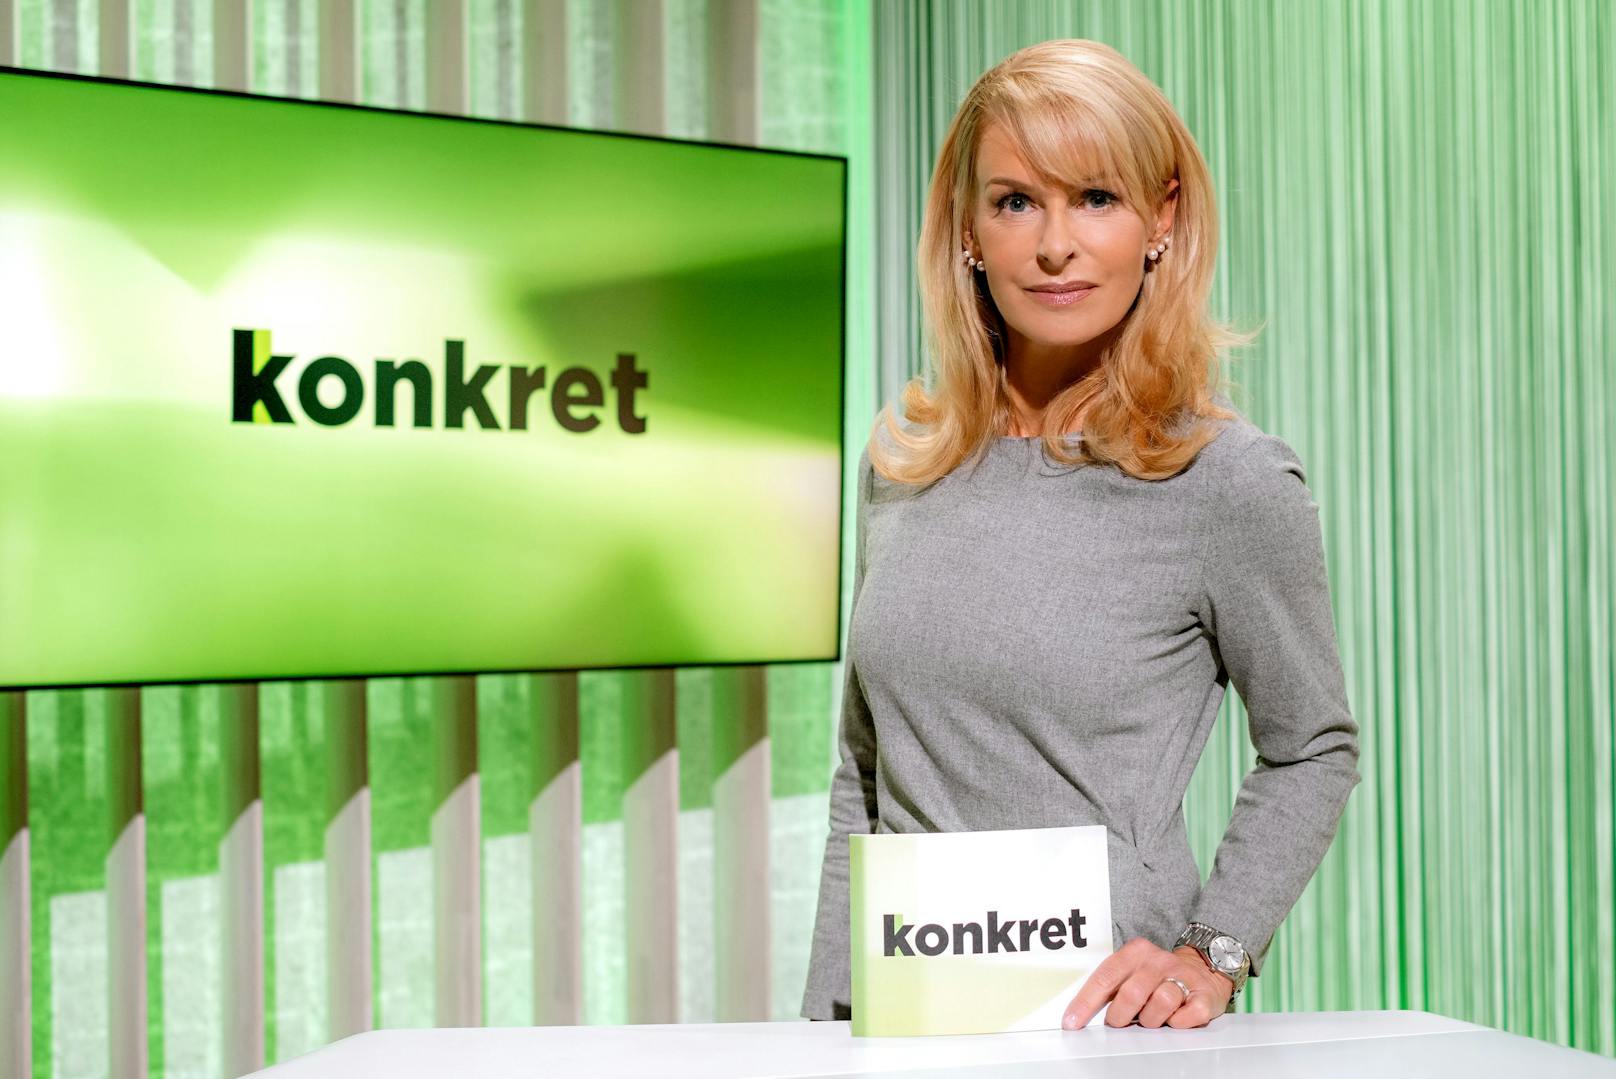 Seit 2010 ist Onka Takats als Beitragsgestalterin im Team des ORF-Konsumentenmagazins "konkret" tätig, mittlerweile auch Chefin vom Dienst. 2019 und 2020 stand sie als Karenzvertretung auch vor der Kamera.